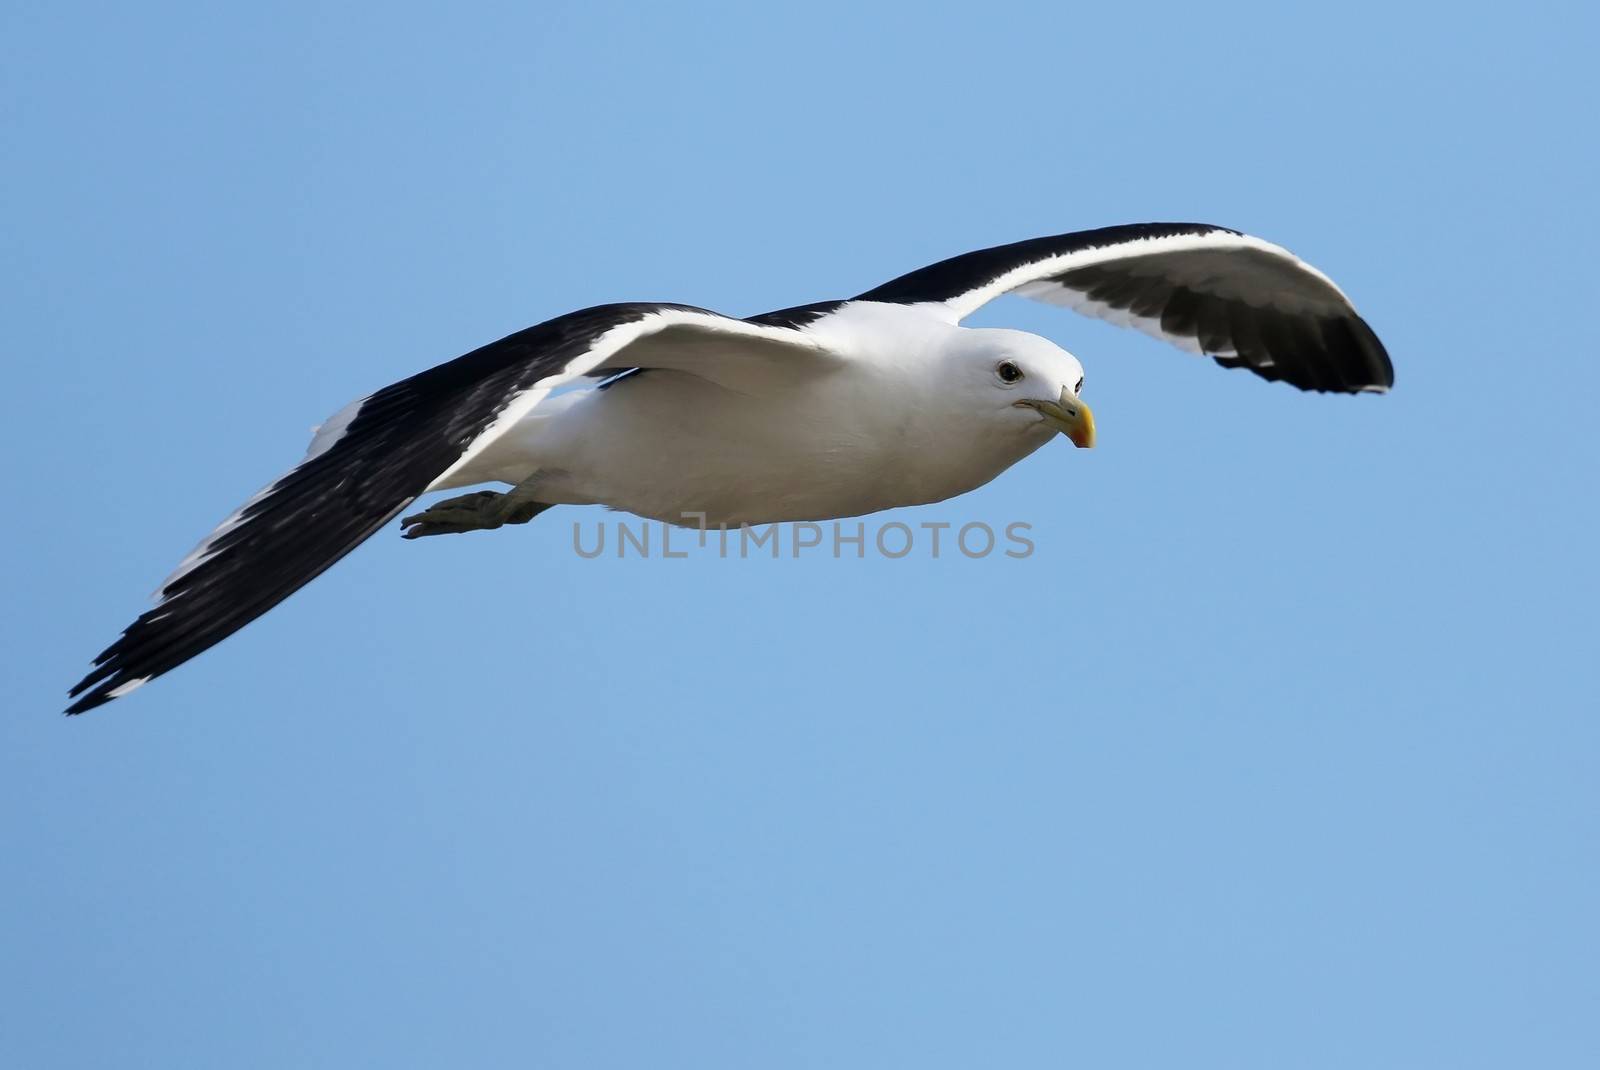 Graceful Kelp Seagull gliding on the ocean breeze